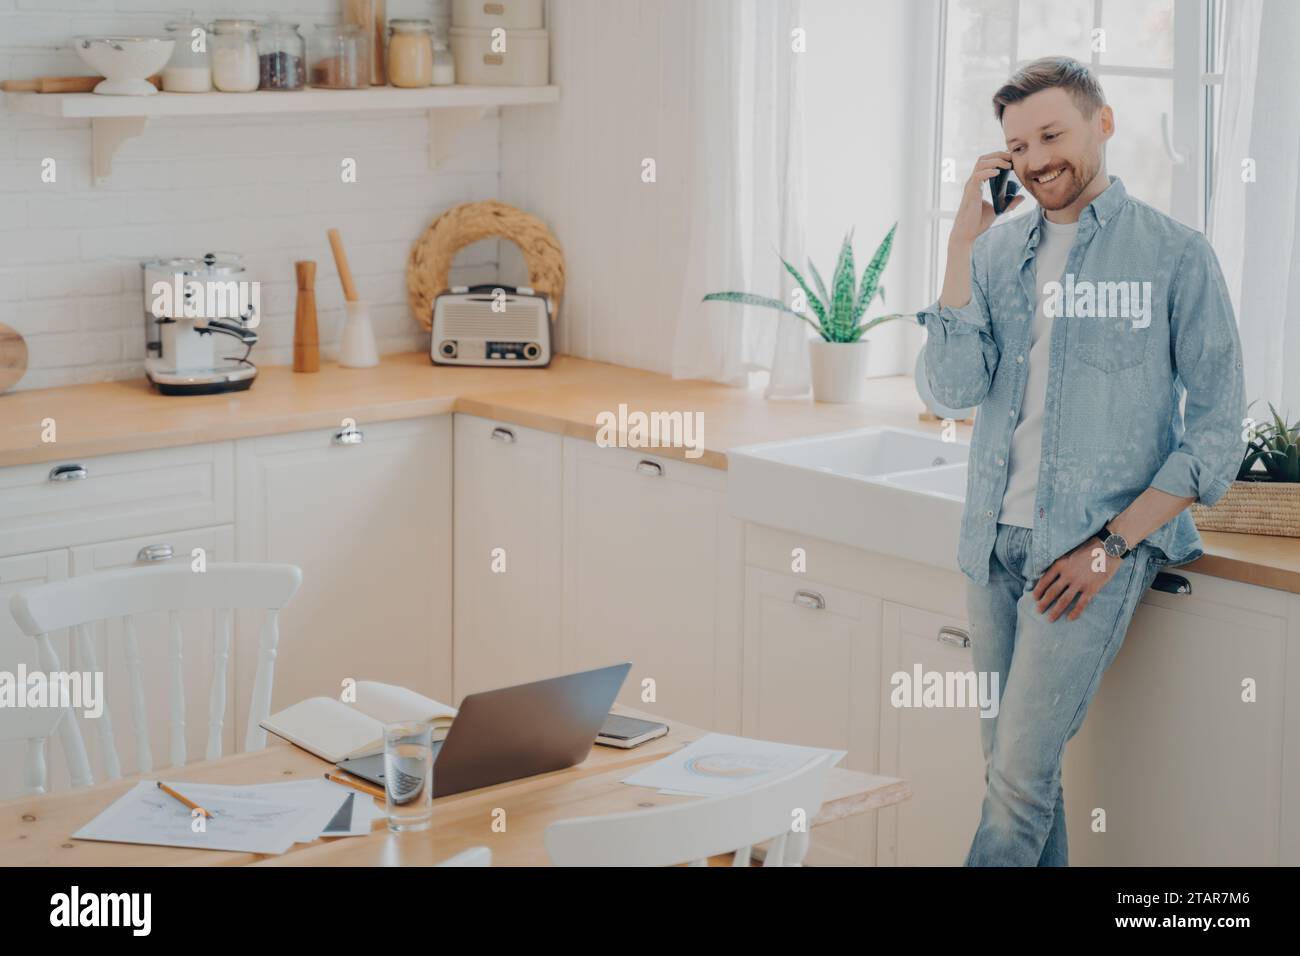 Mann in lässiger Kleidung, der am Telefon in einer hellen Küche spricht Stockfoto